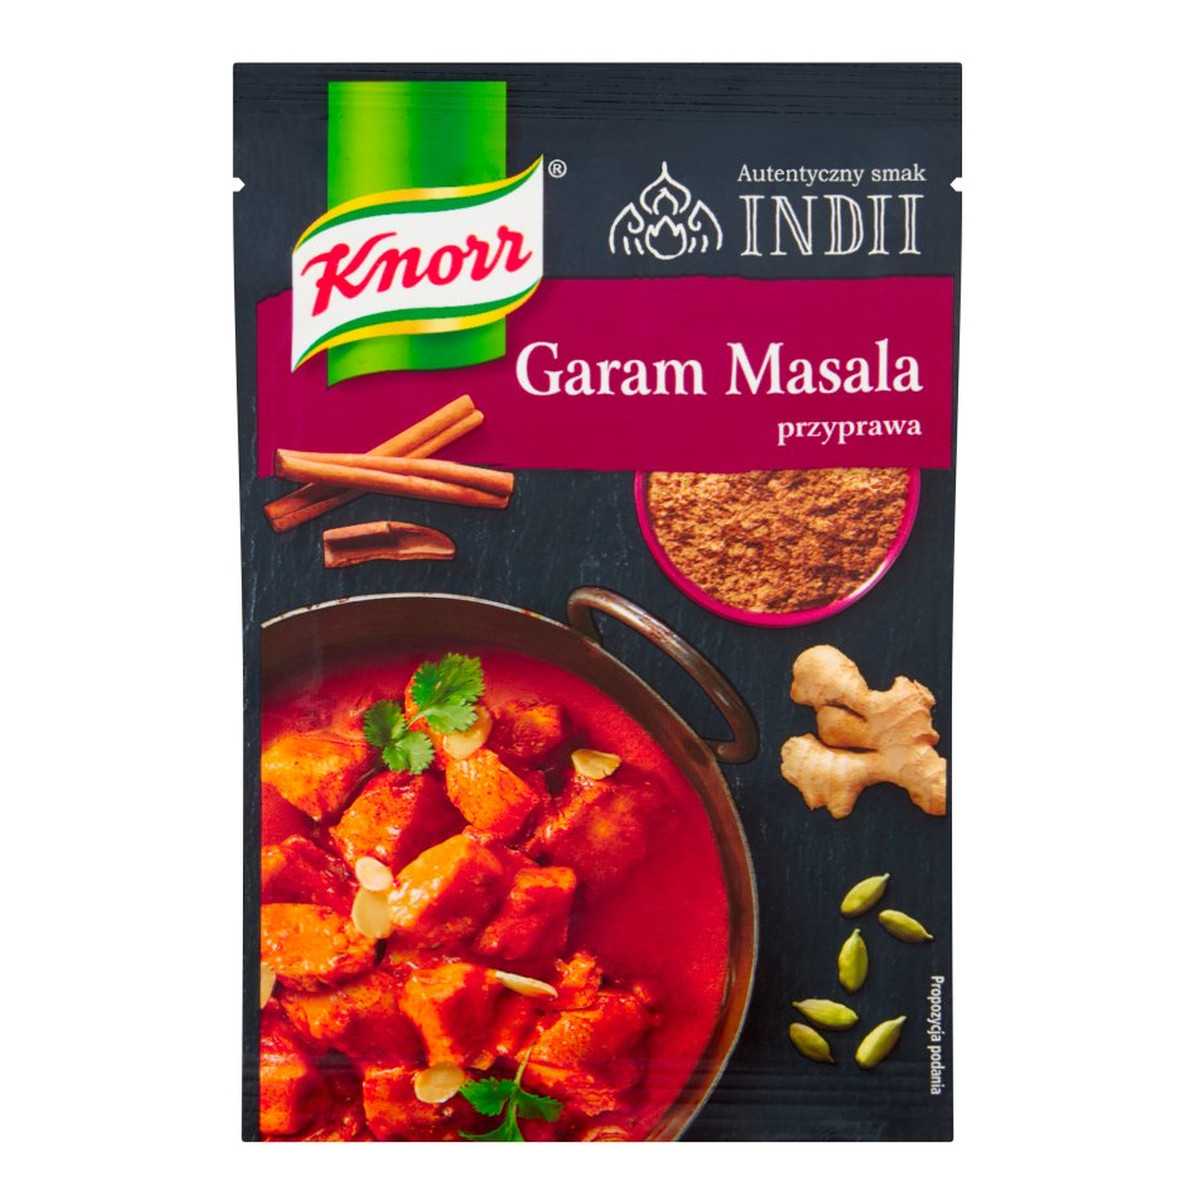 Knorr Autentyczny Smak Indii przyprawa Garam Masala 15g